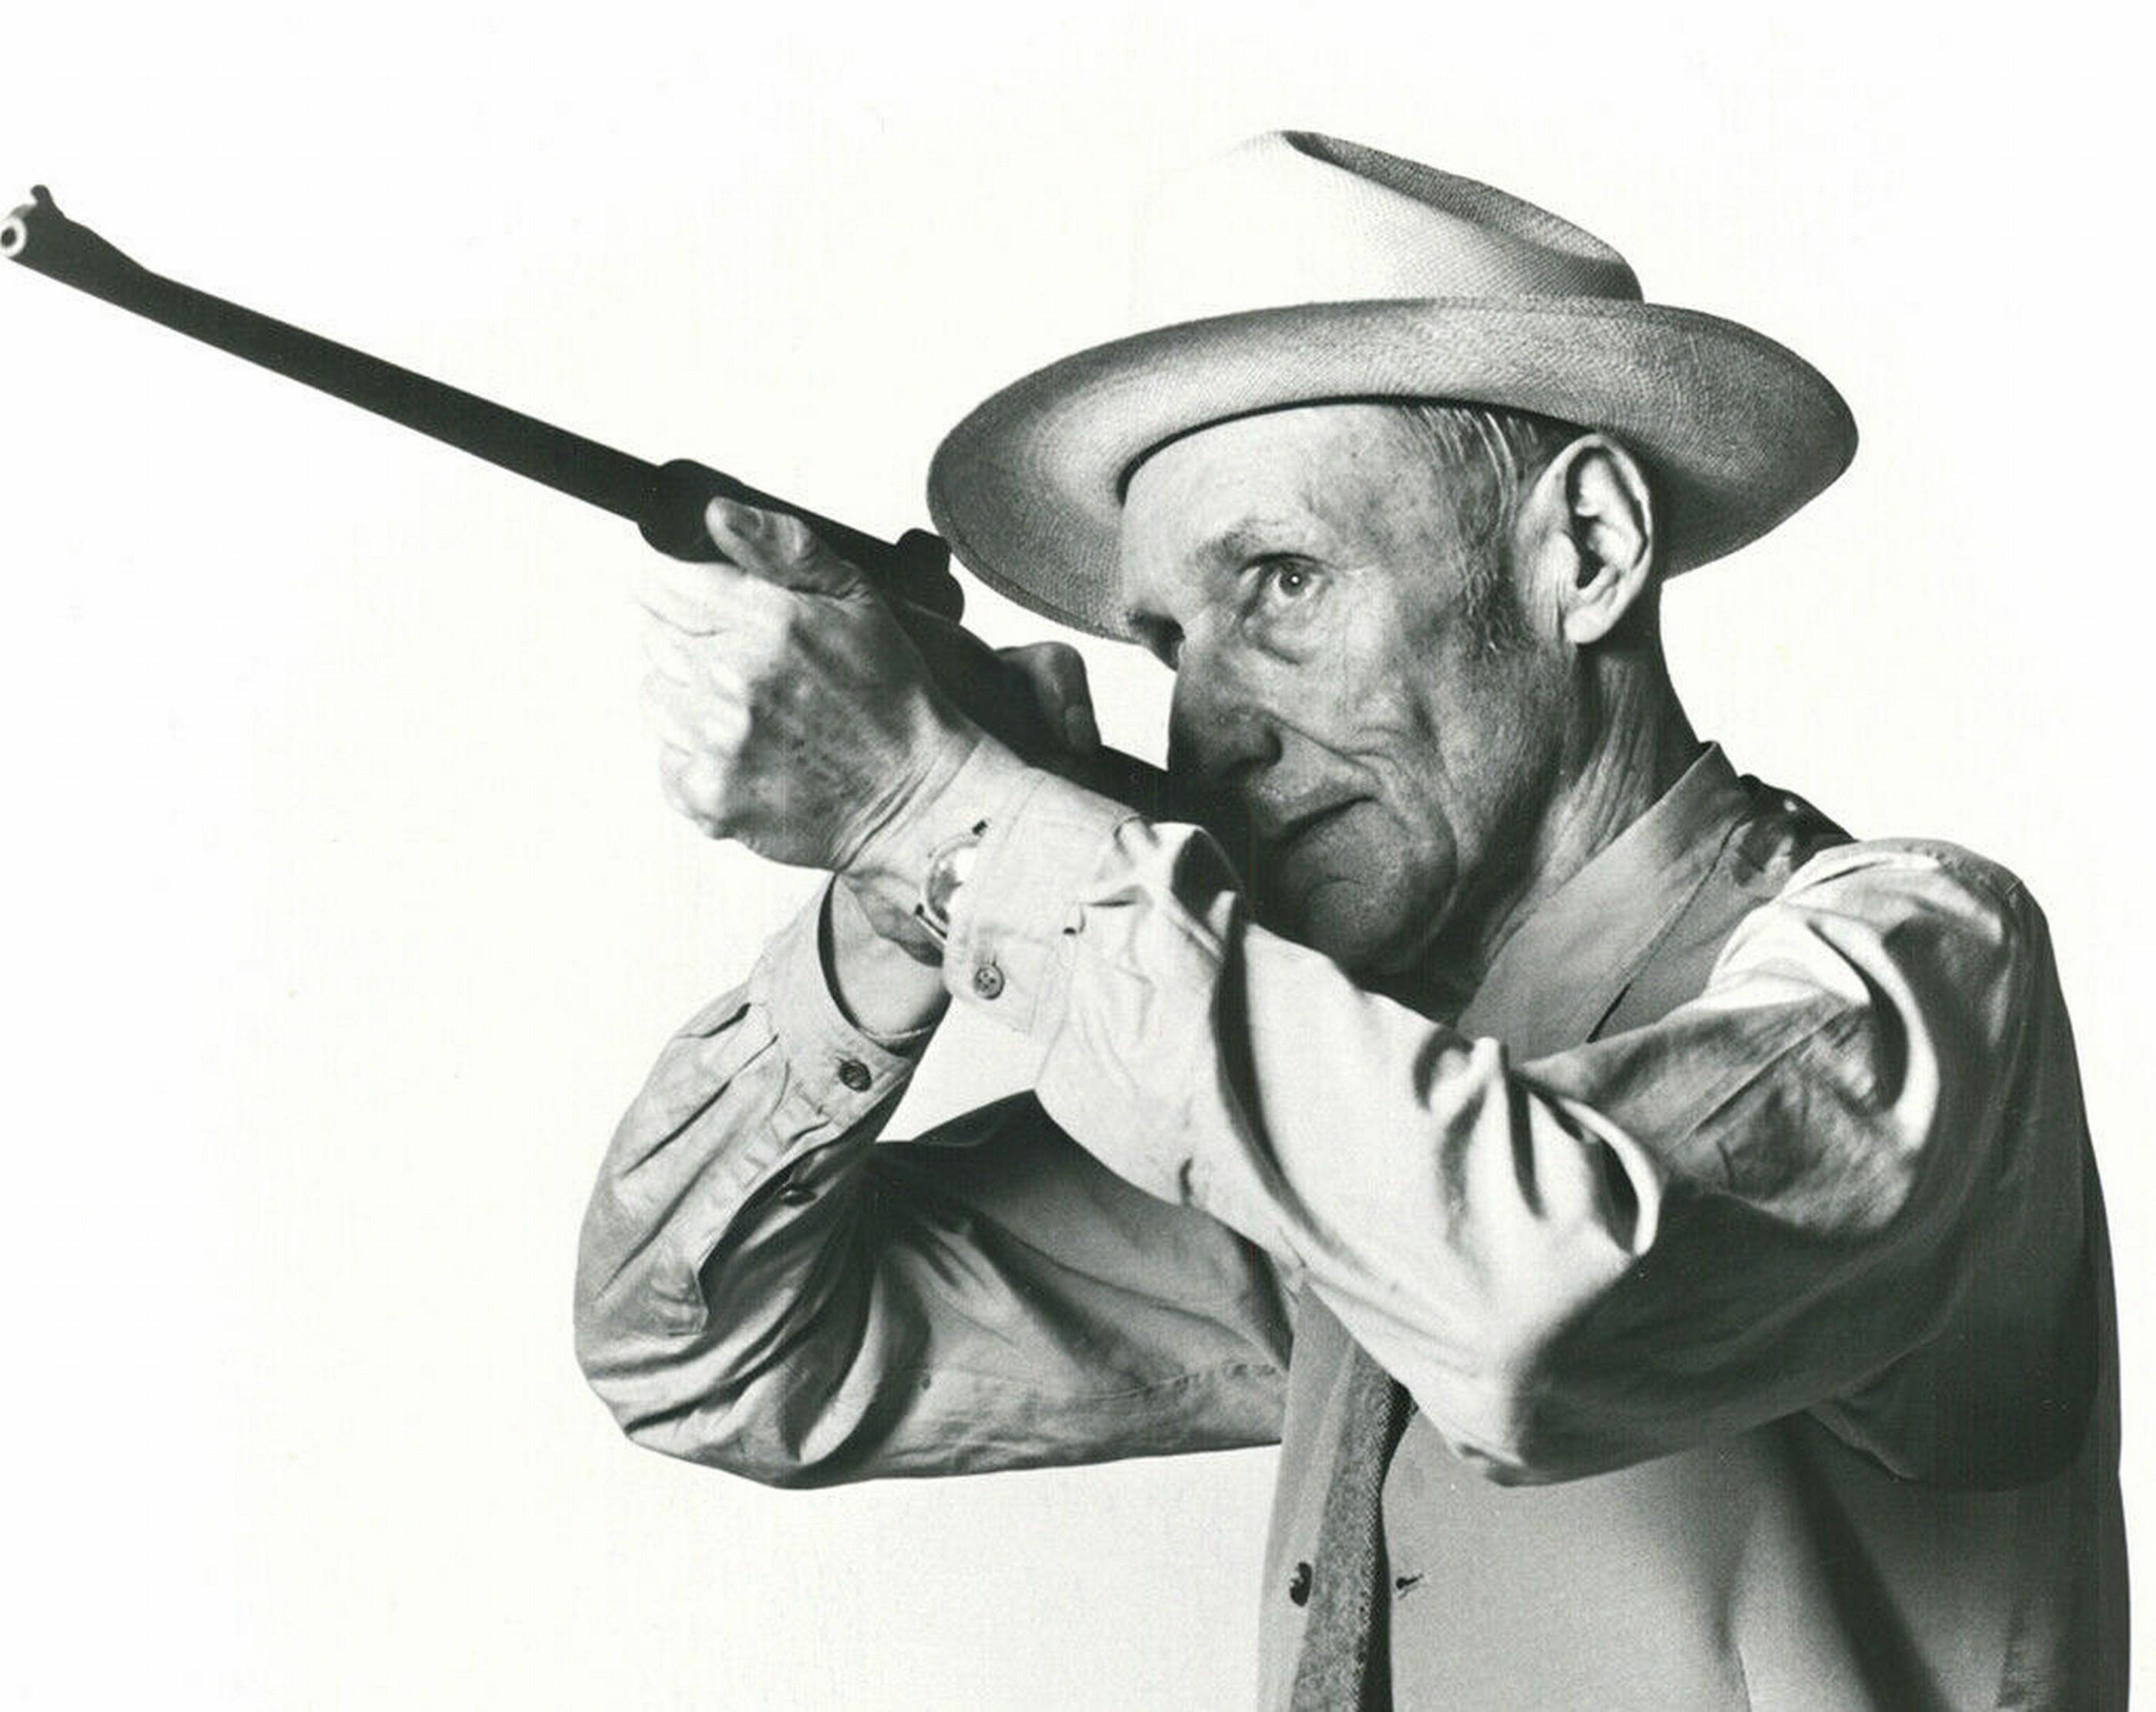 William S. Burroughs (~38% DE RÉDUCTION SUR LE PRIX DE LISTE, DURÉE LIMITÉE) - Photograph de Robert Mapplethorpe